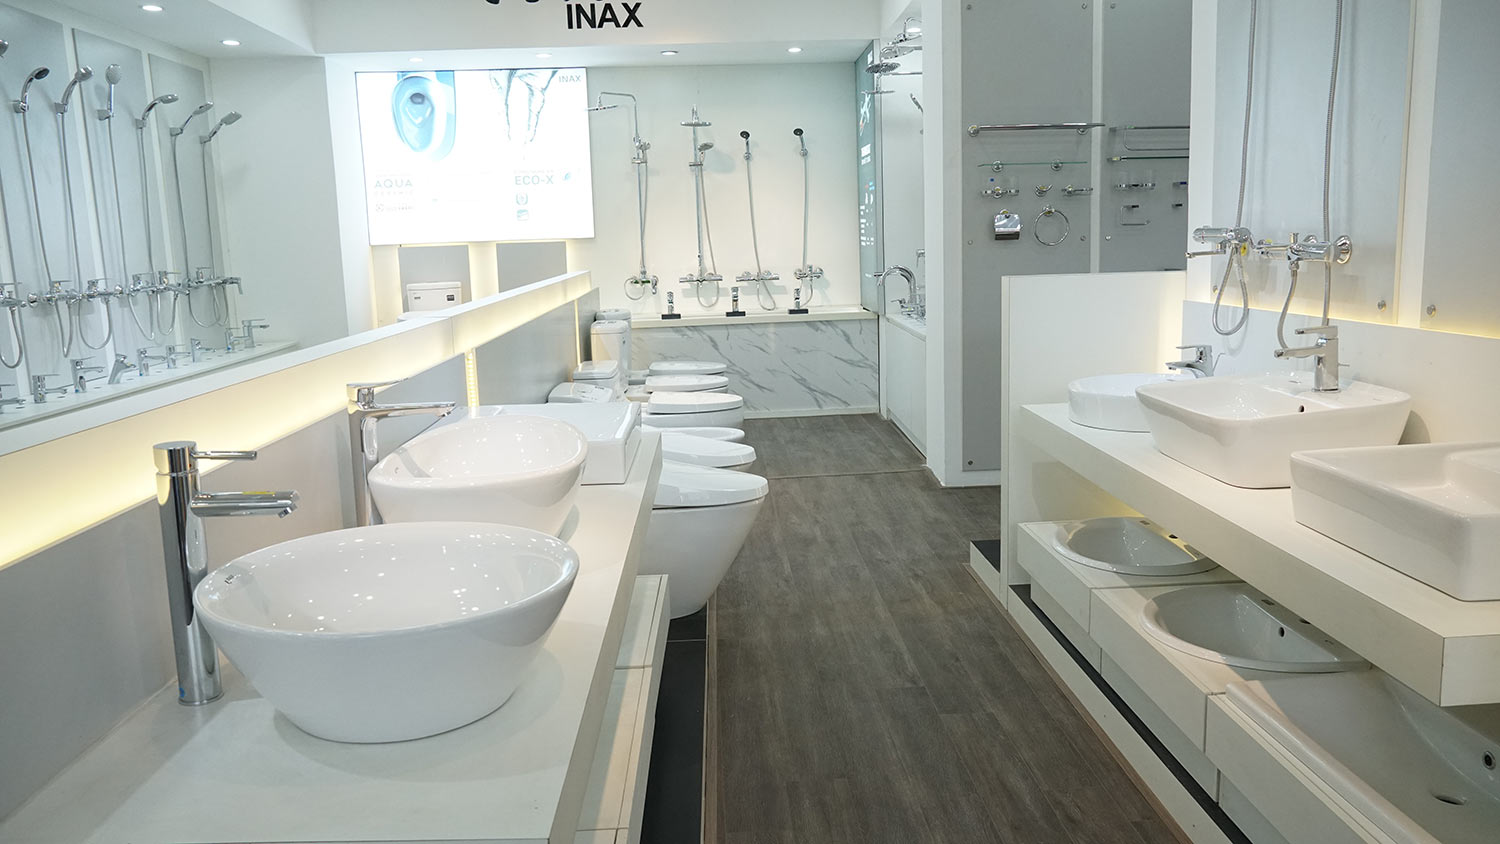 Khu trựng bày thiết bị vệ sinh Inax tại Showroom Hải Linh tại Hà Đông